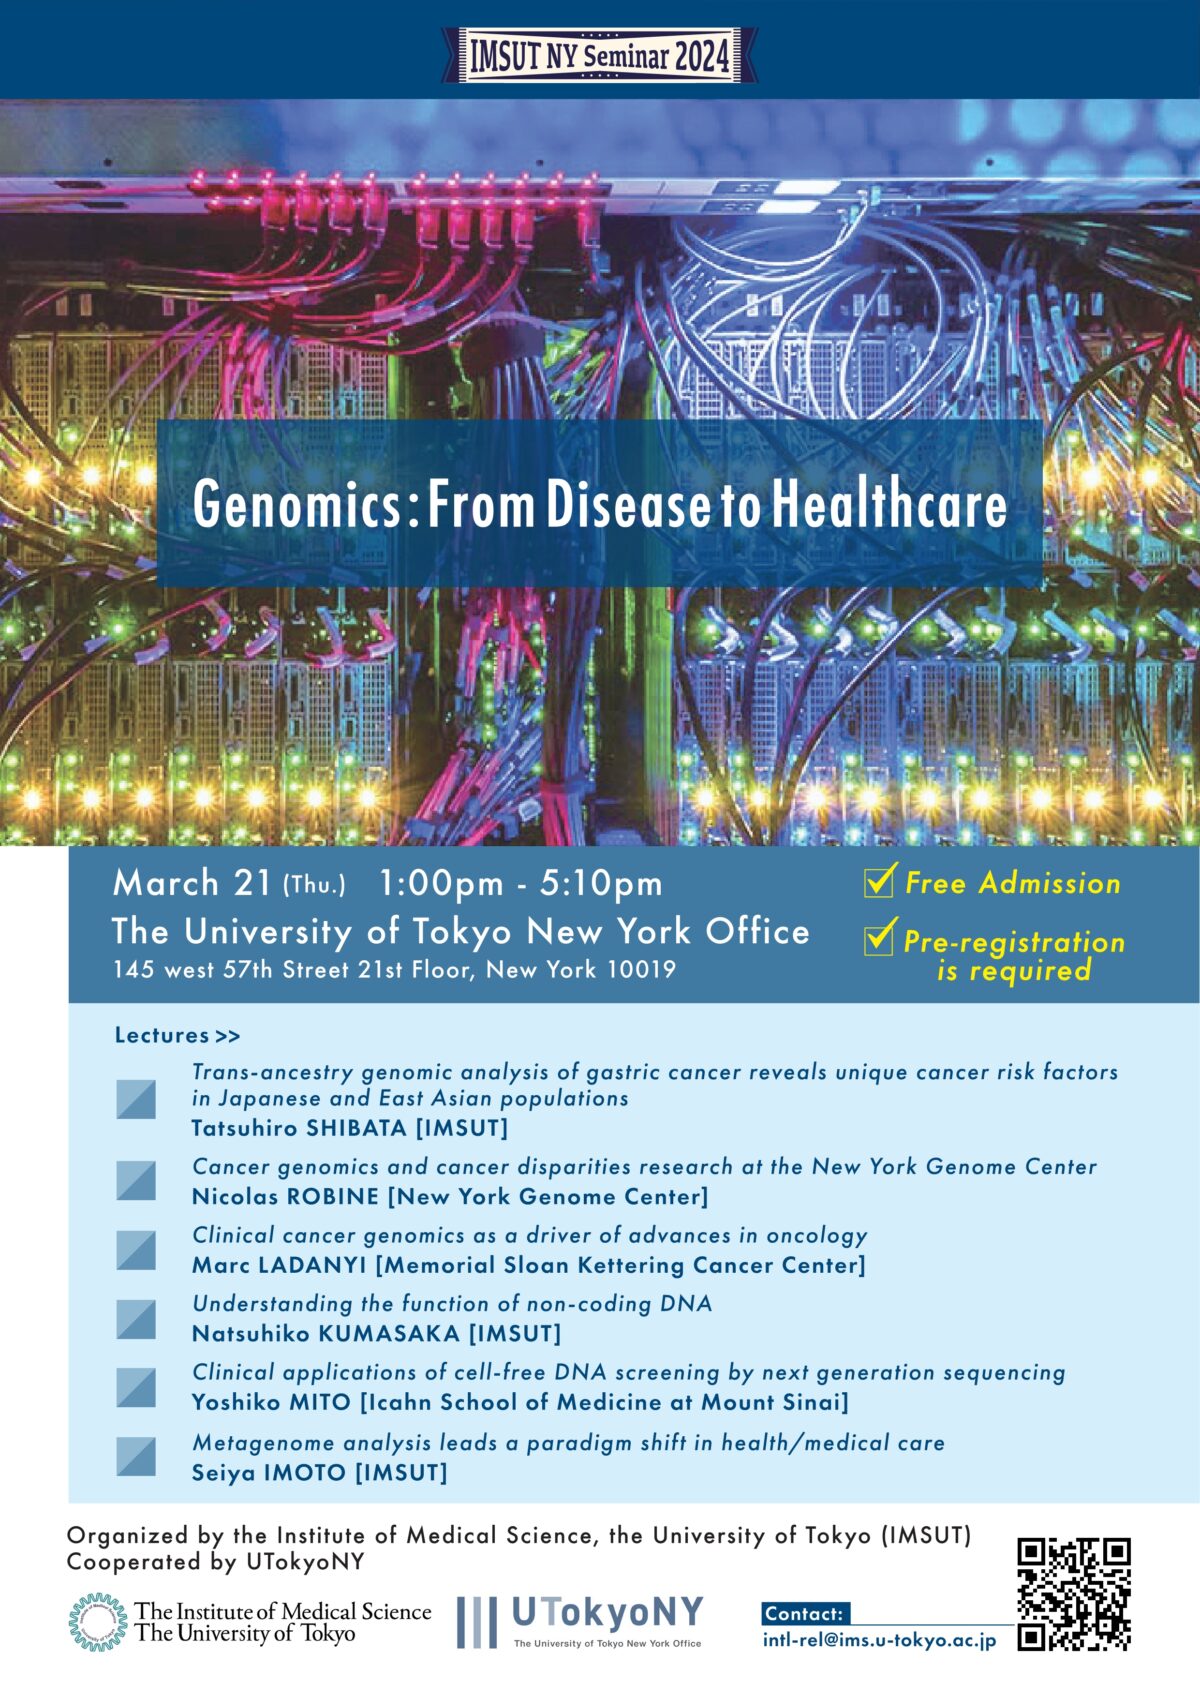 IMSUT NY Seminar 2024 ~Genomics: From Disease to Healthcare~